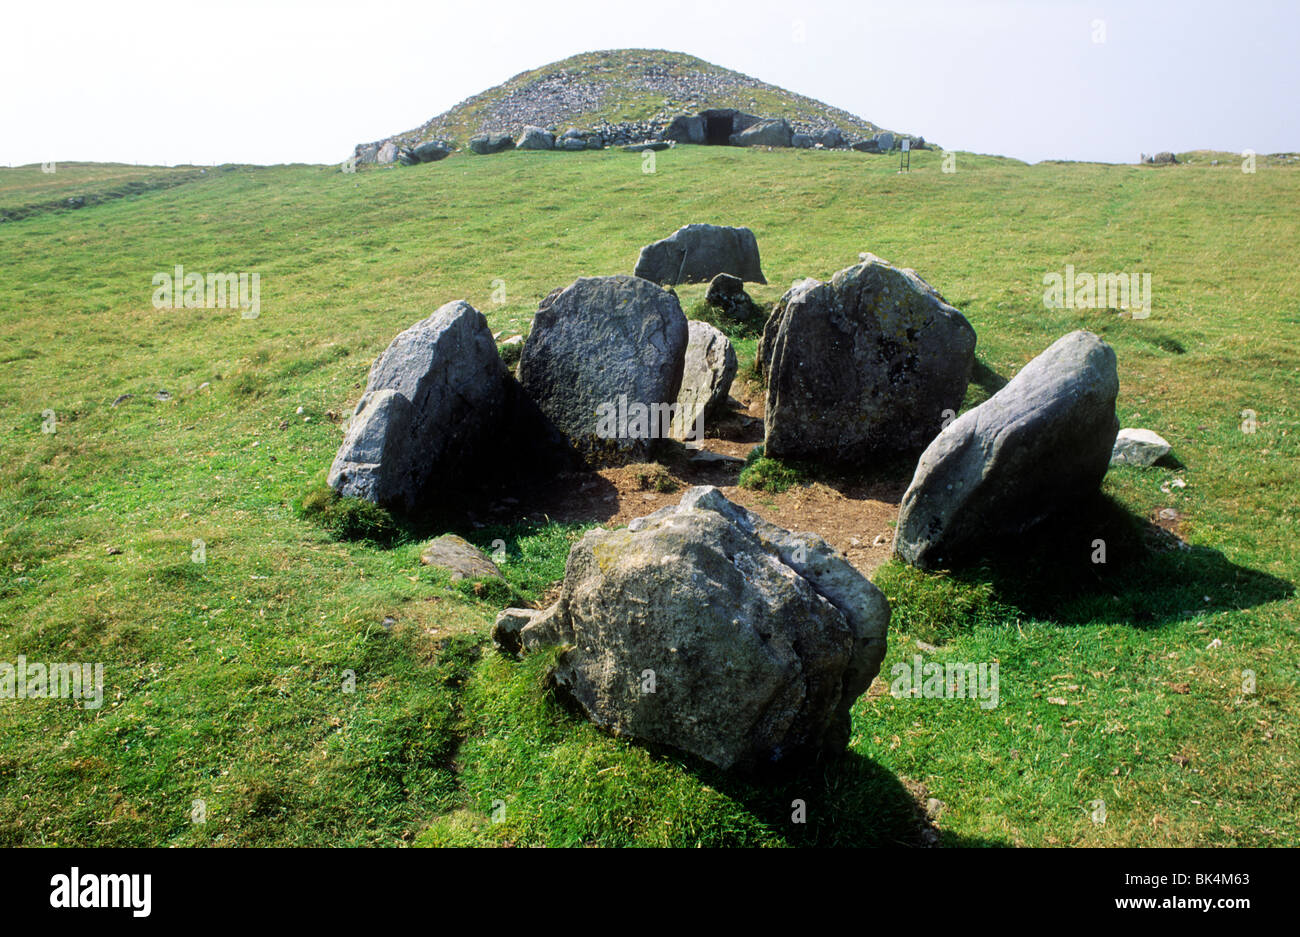 Il Tumulo T, Slieve Na Calliaghe, nella contea di Meath, sepoltura camera tomba Irlanda Eire Irish tombe preistoriche camere tumulo di grave Foto Stock